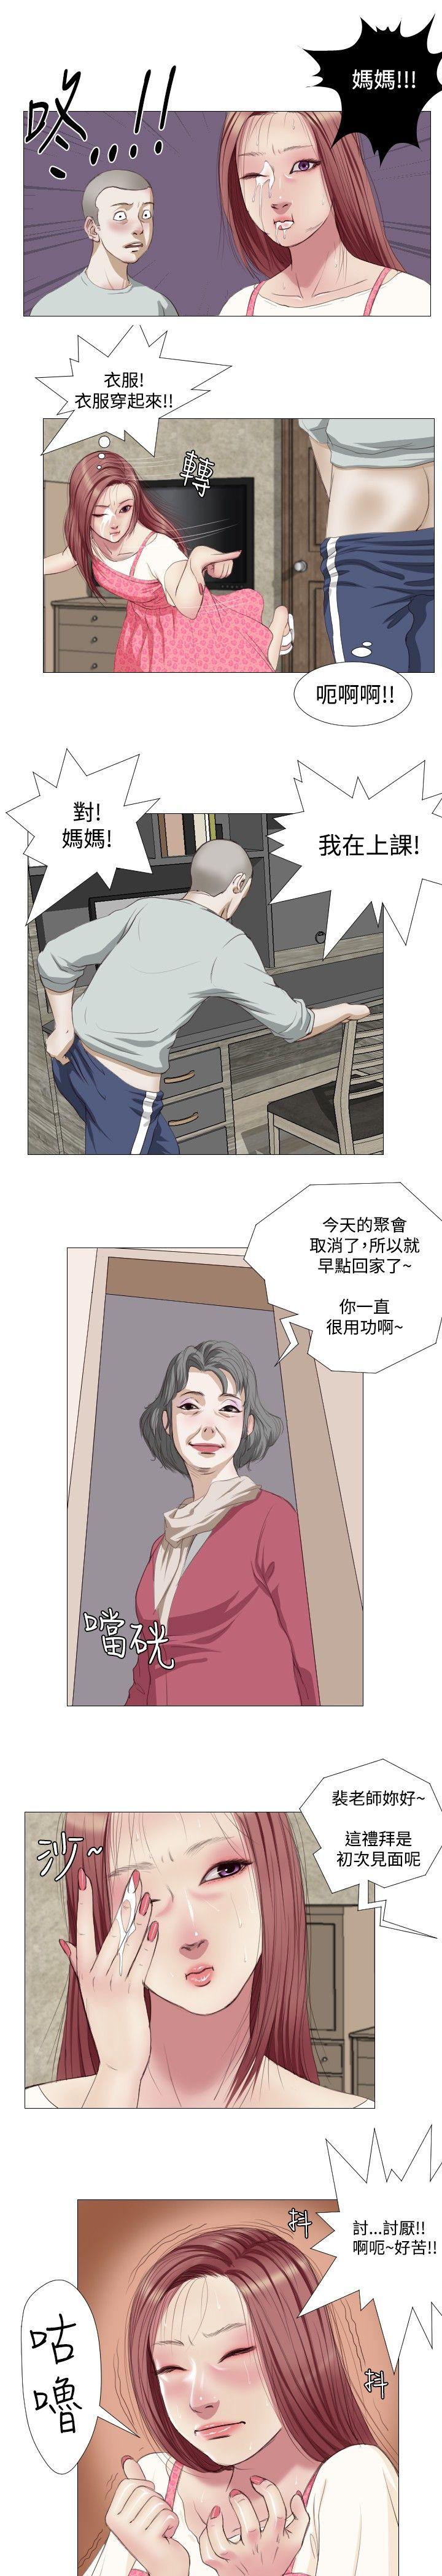 韩国污漫画 死亡天使 第8话 5